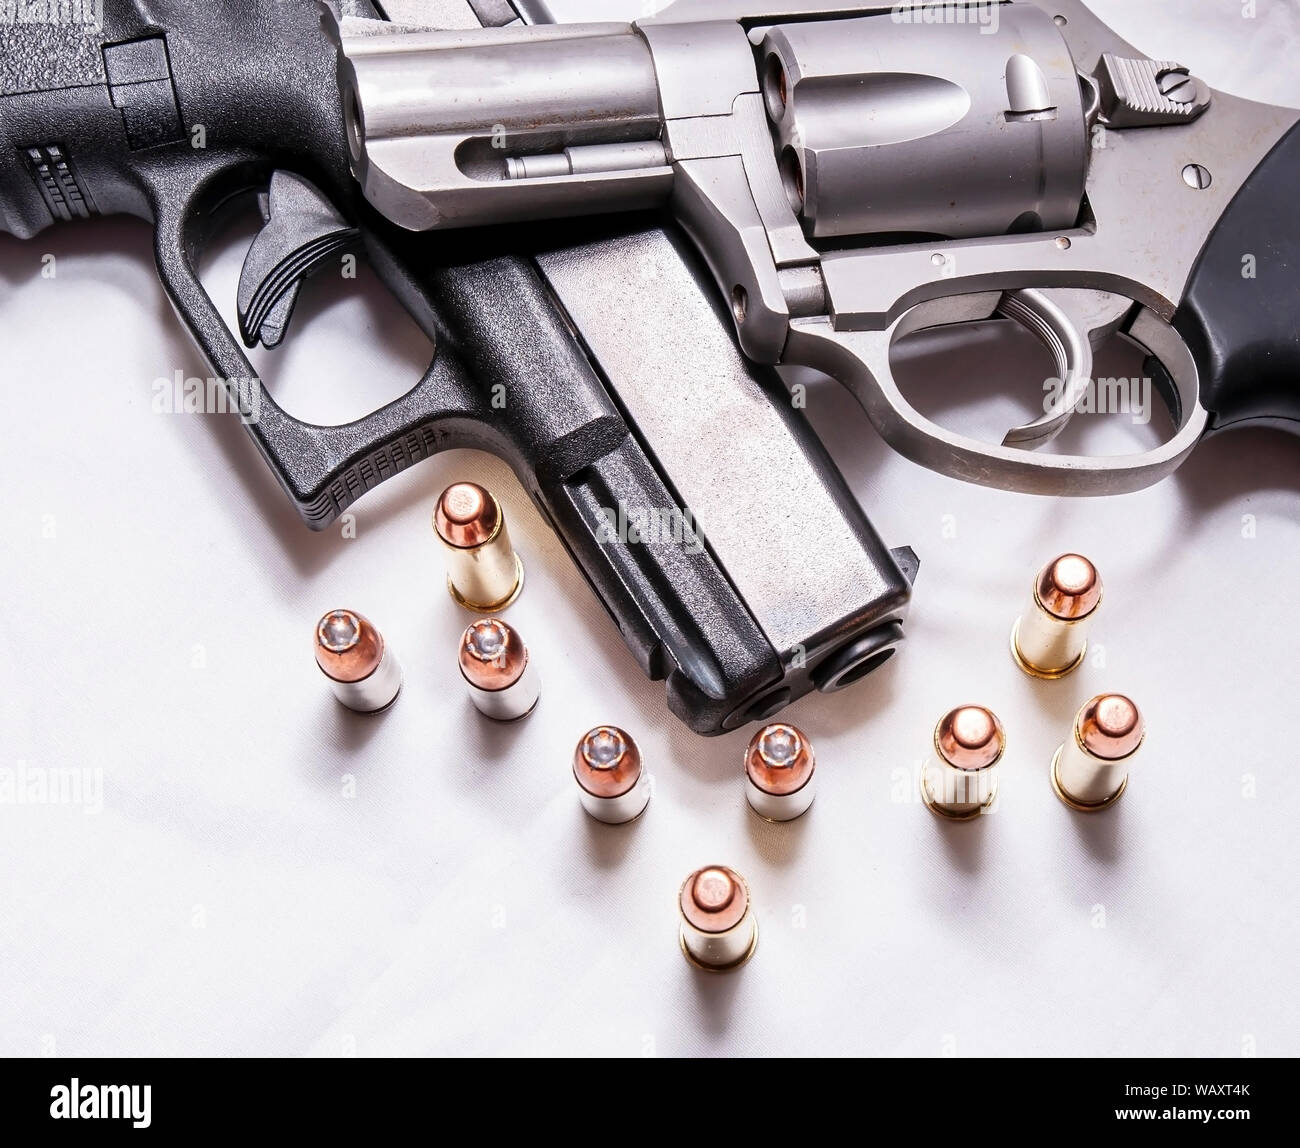 Un naso camuso, acciaio inossidabile 357 revolver Magnum sulla parte superiore di un nero 9mm pistola con alcuni proiettili per ogni calibro di fronte a loro su uno sfondo bianco Foto Stock